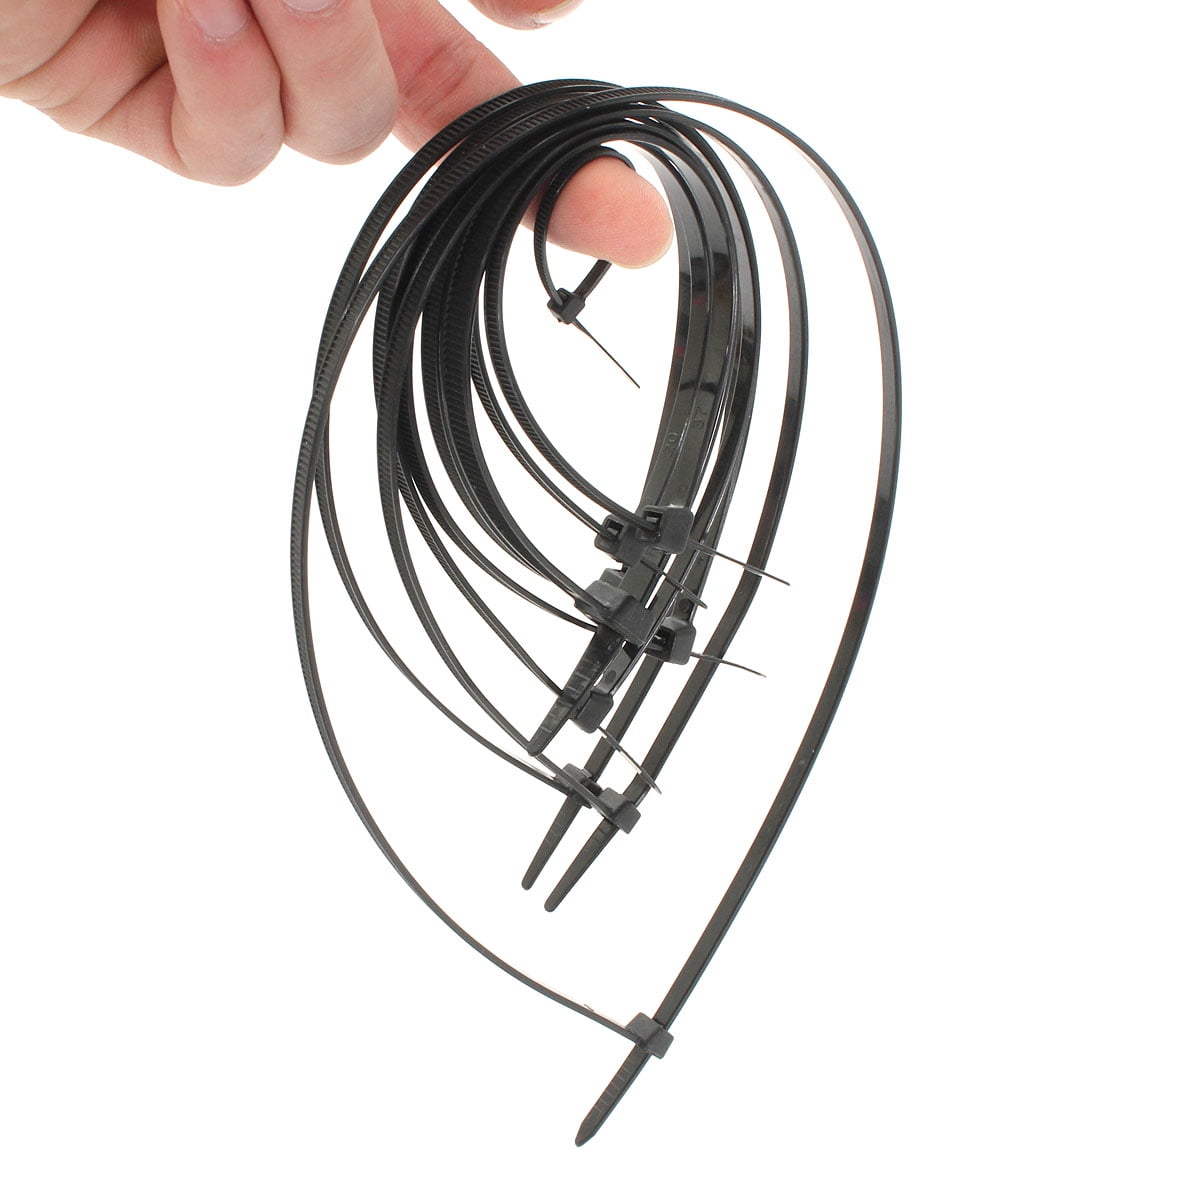 100X Black White Nylon Plastic Cable Ties Zip Tie Lock Wraps Self-Locking 